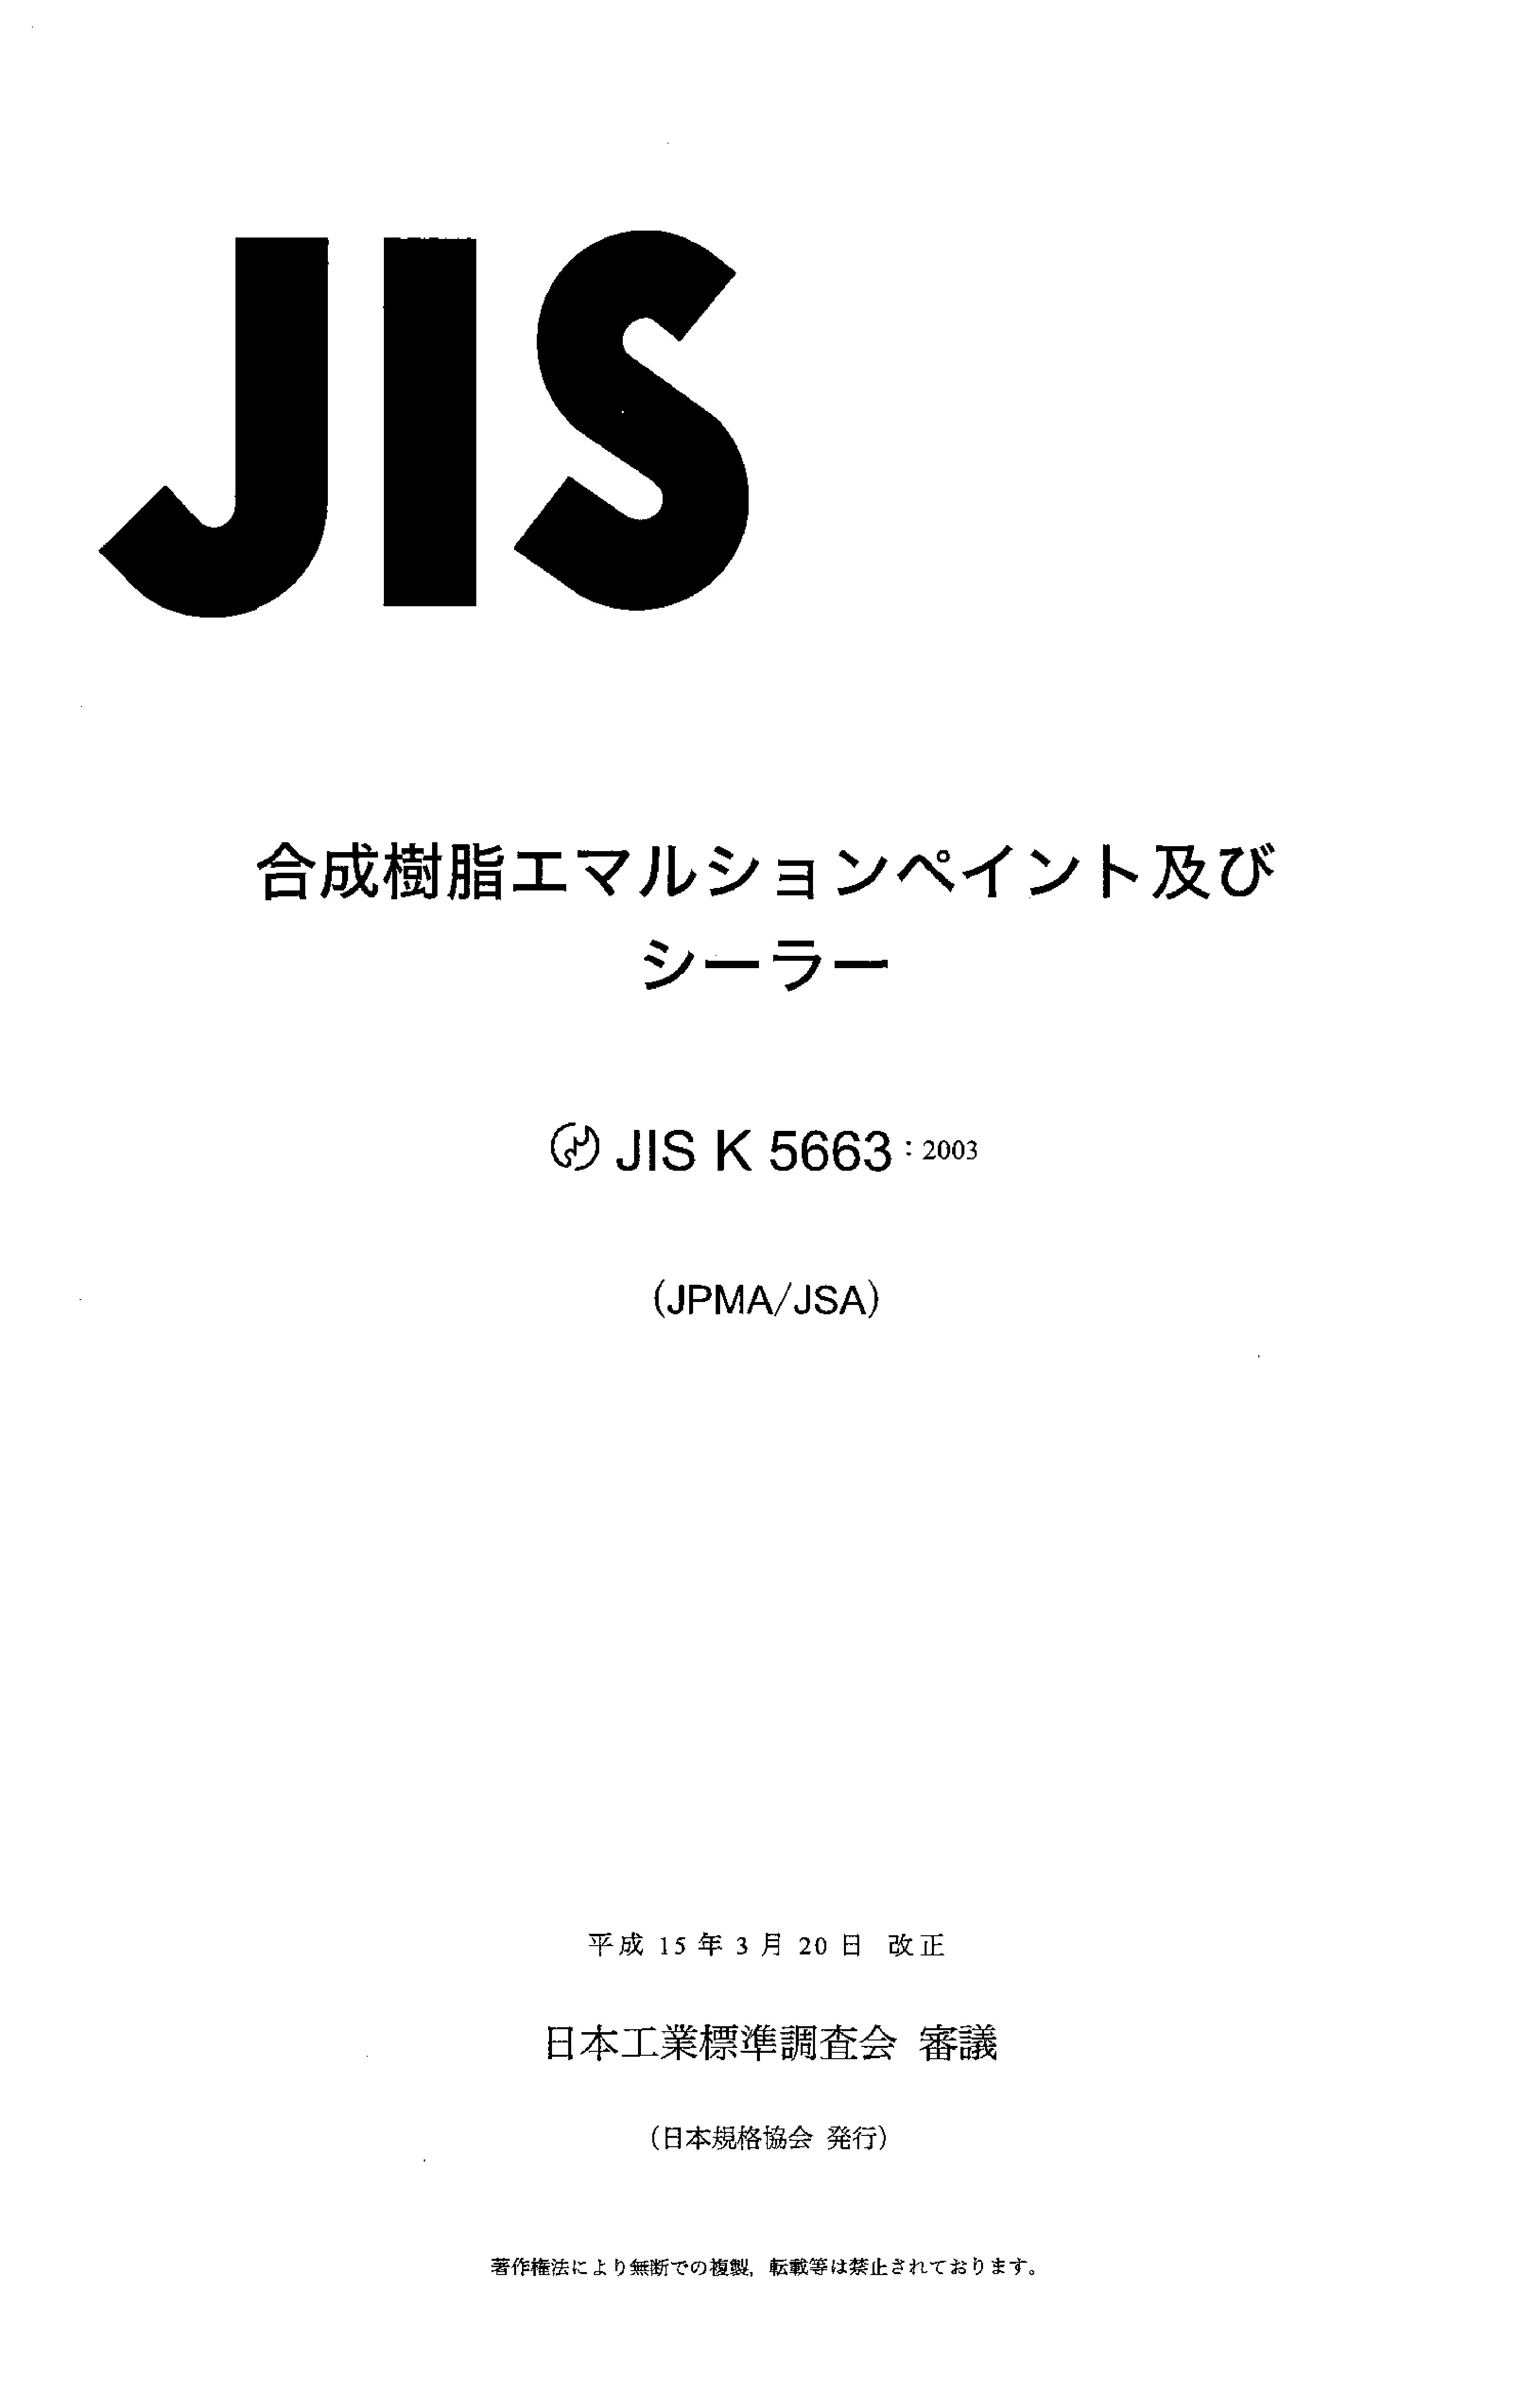 JIS K 5663:2003封面图